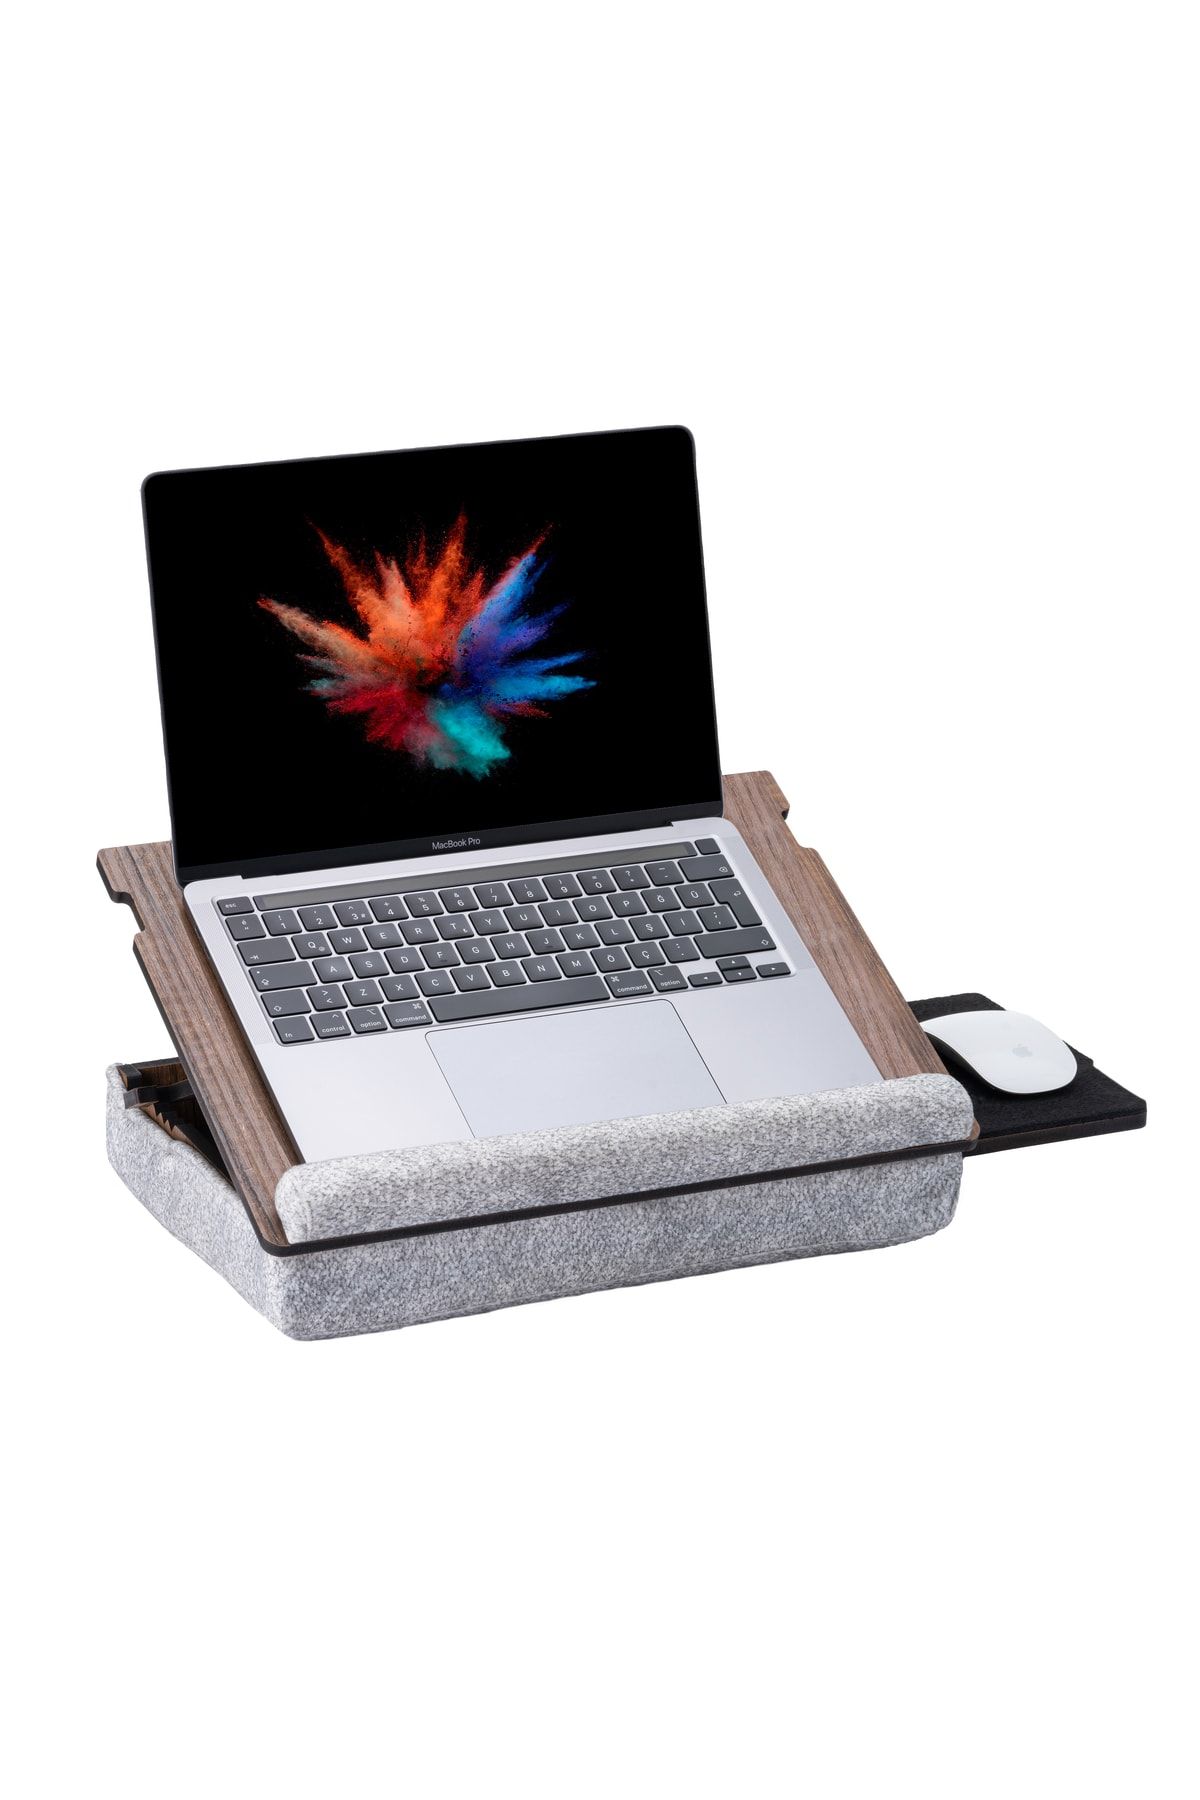 Vigo Wood - Eğim Ayarlanabilir Çekmeceli Mousepad Minderli Laptop Sehpası - Ceviz Ls051 LS05X